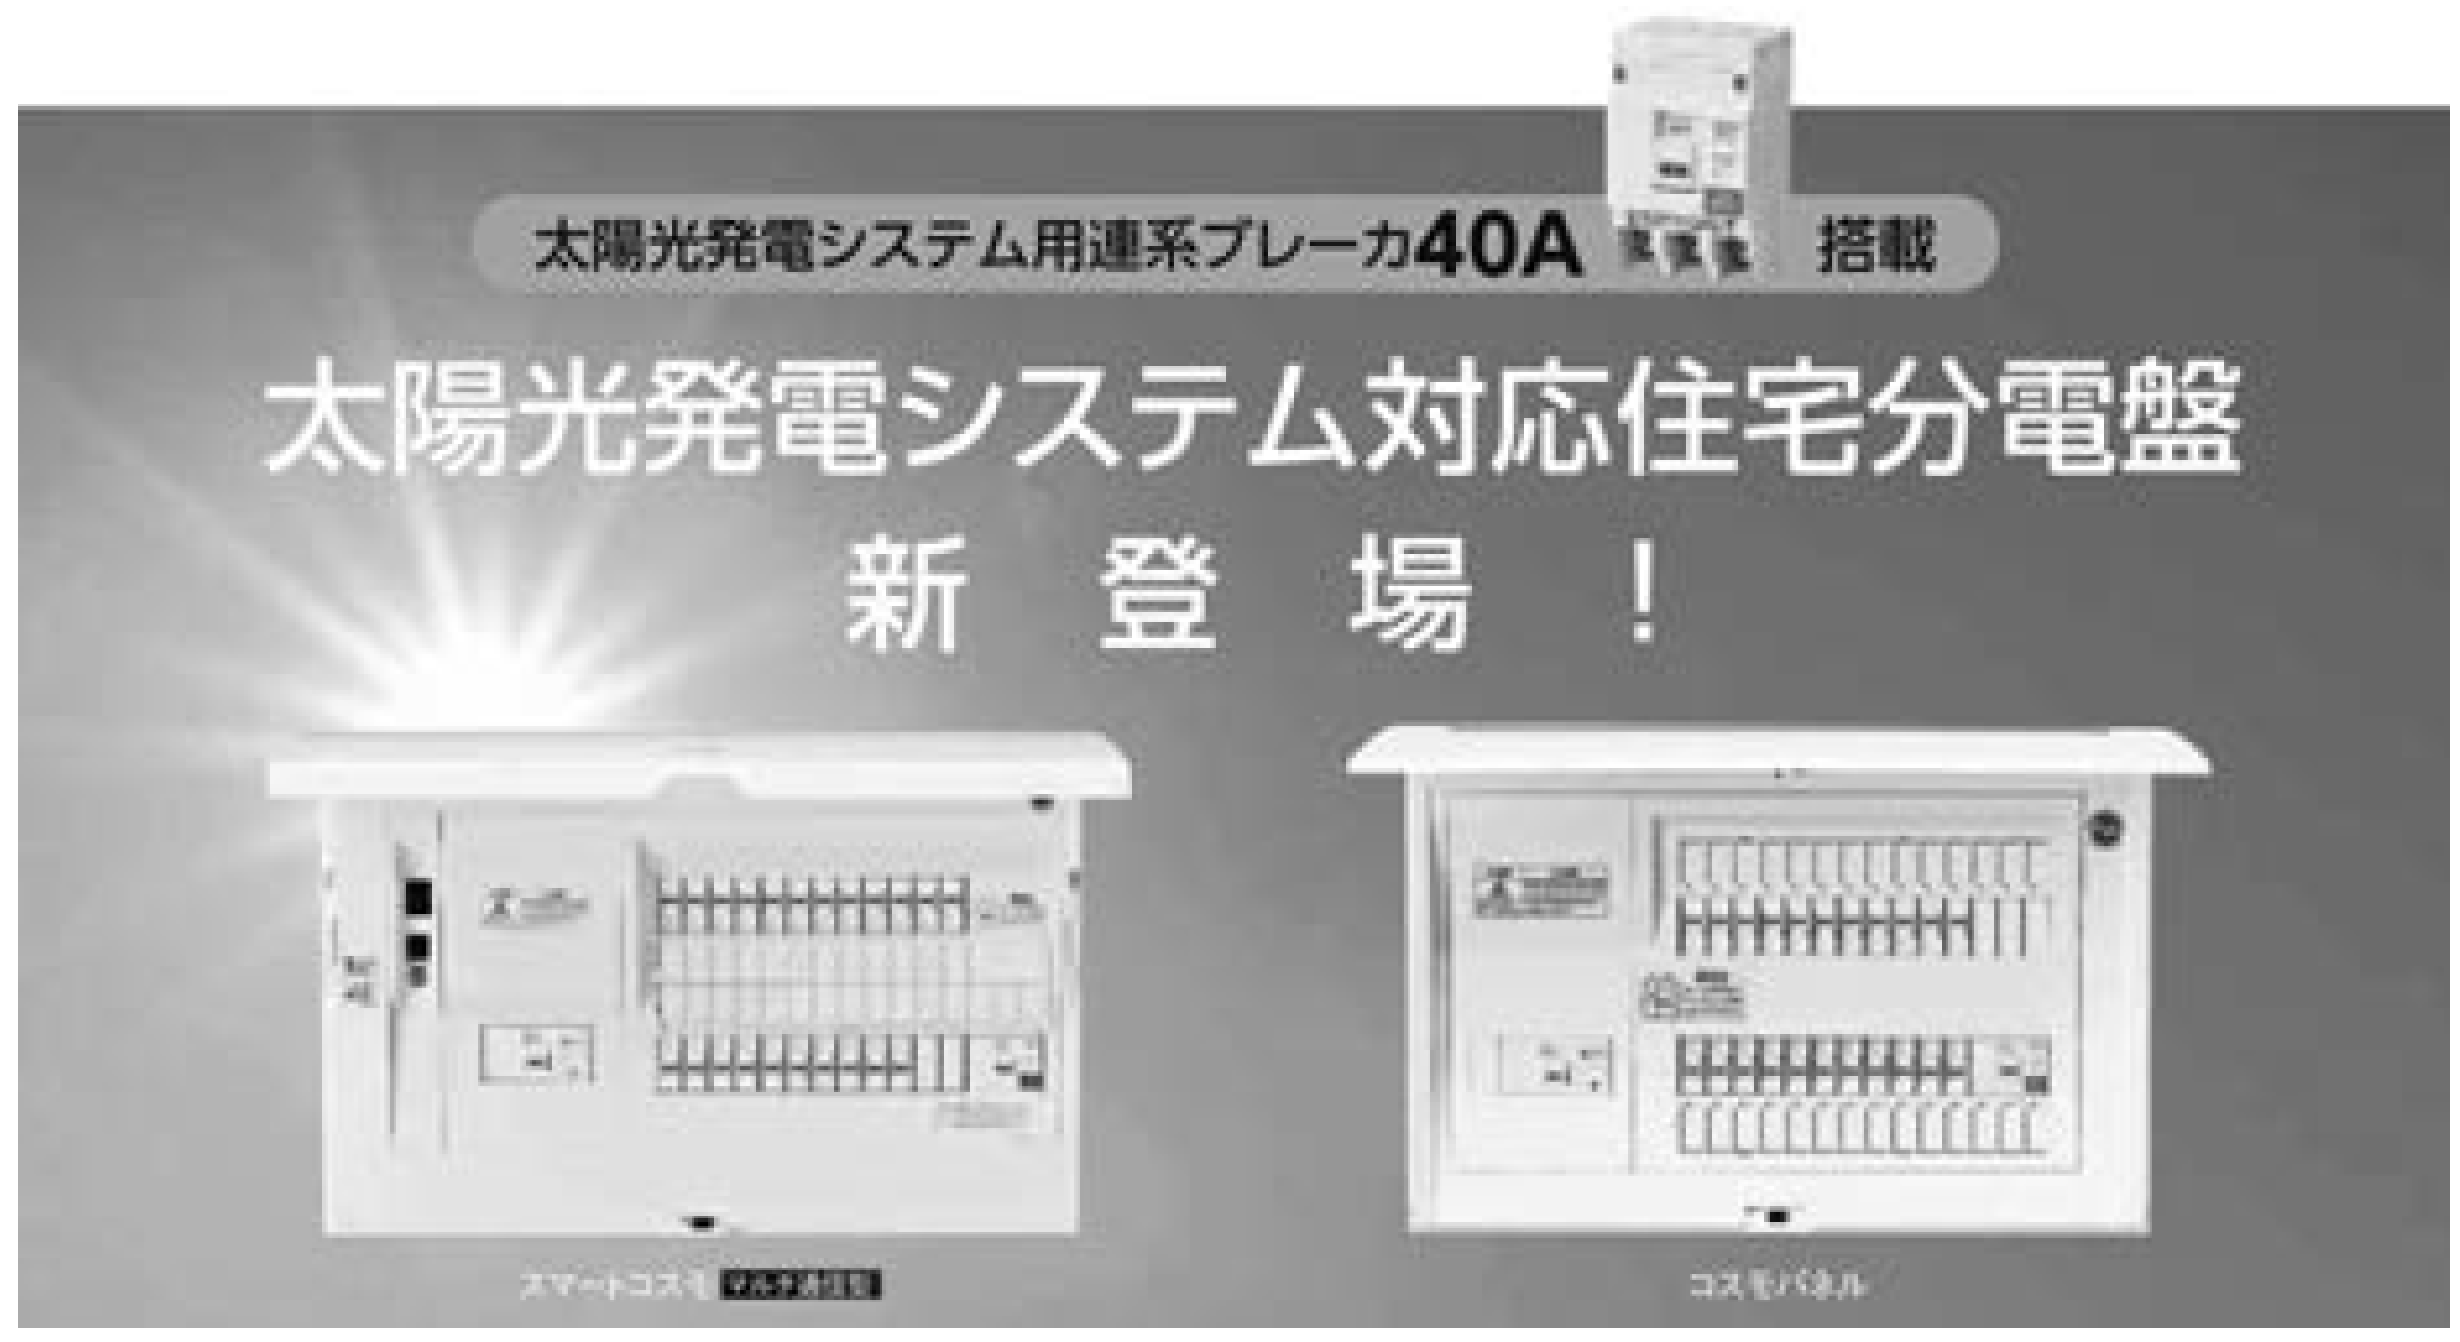 パナソニック MKN7360S スマートコスモ用エコーネットライト対応計測セット(BHS・MKS品番用) - 4